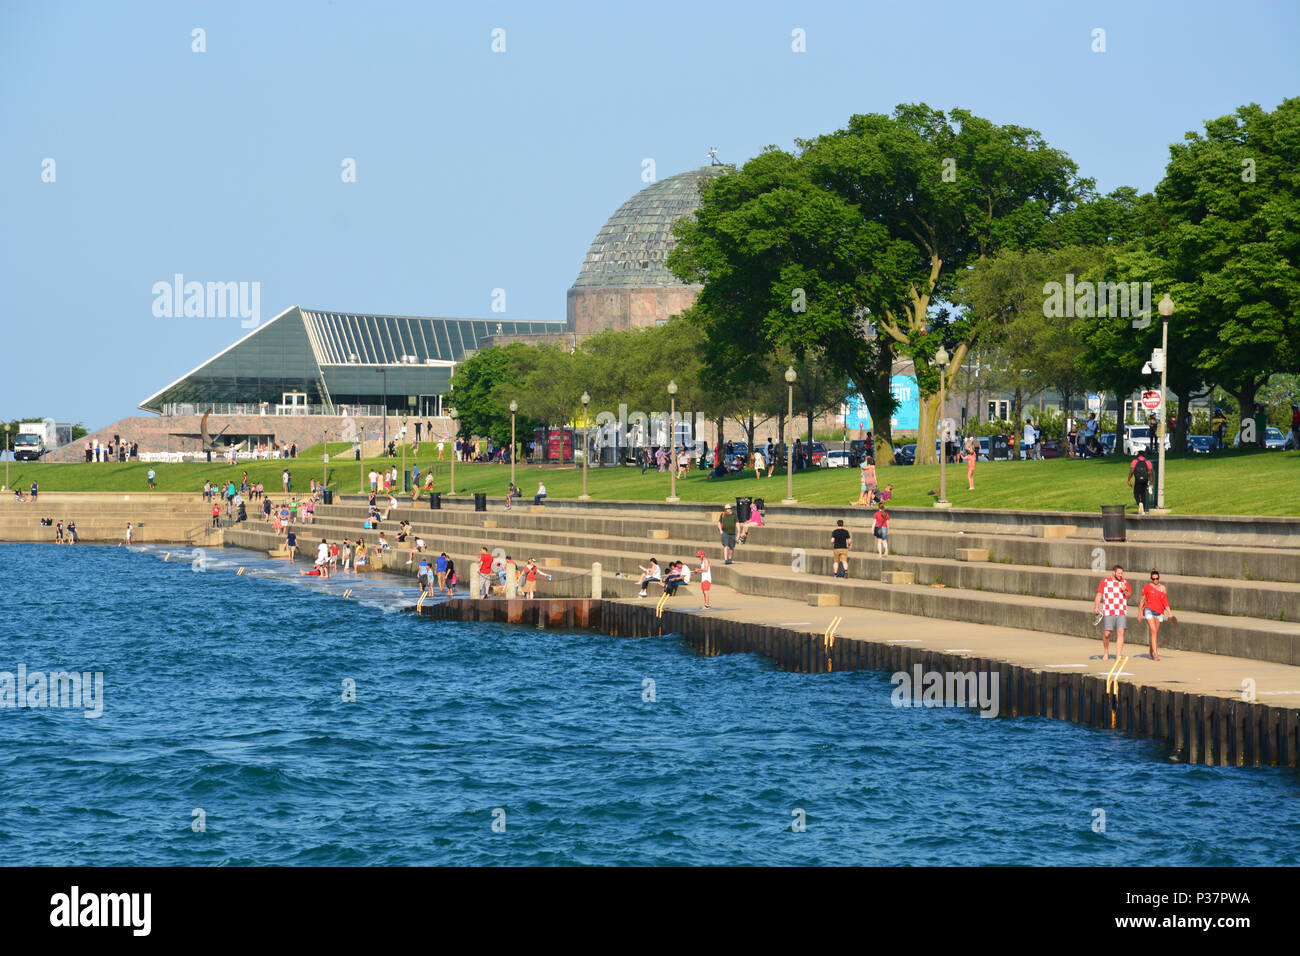 Le lac Michigan casser mur le long de la solidarité dur sur Chicago's Museum Campus offre l'accès à l'eau et une pause de la chaleur en été. Banque D'Images